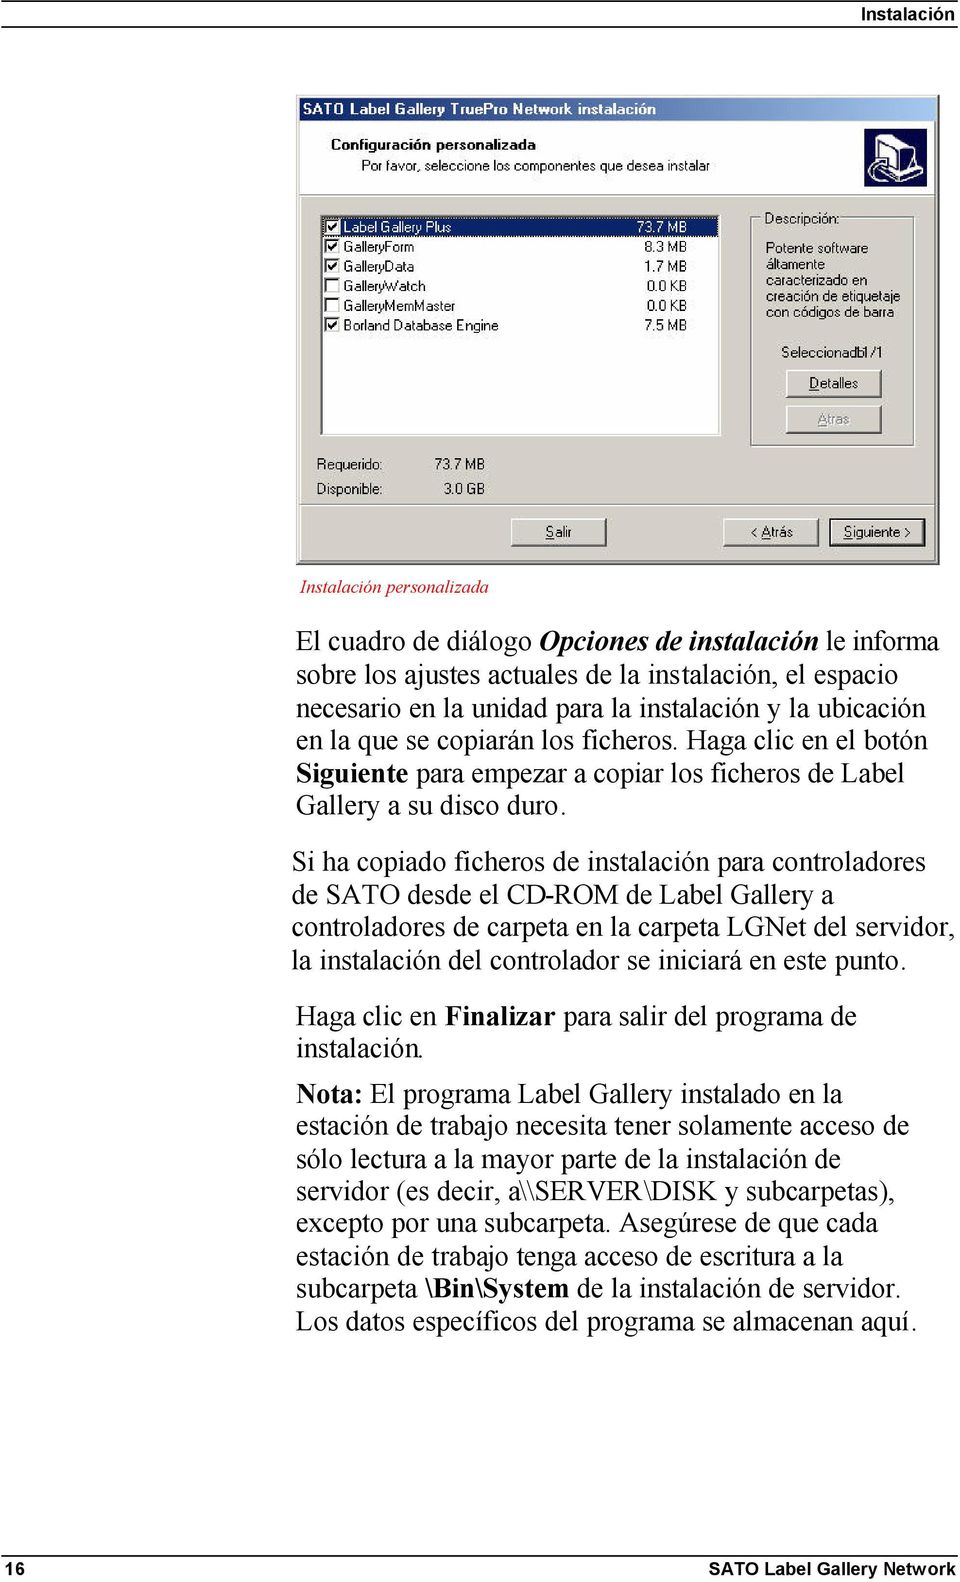 Si ha copiado ficheros de instalación para controladores de SATO desde el CD-ROM de Label Gallery a controladores de carpeta en la carpeta LGNet del servidor, la instalación del controlador se